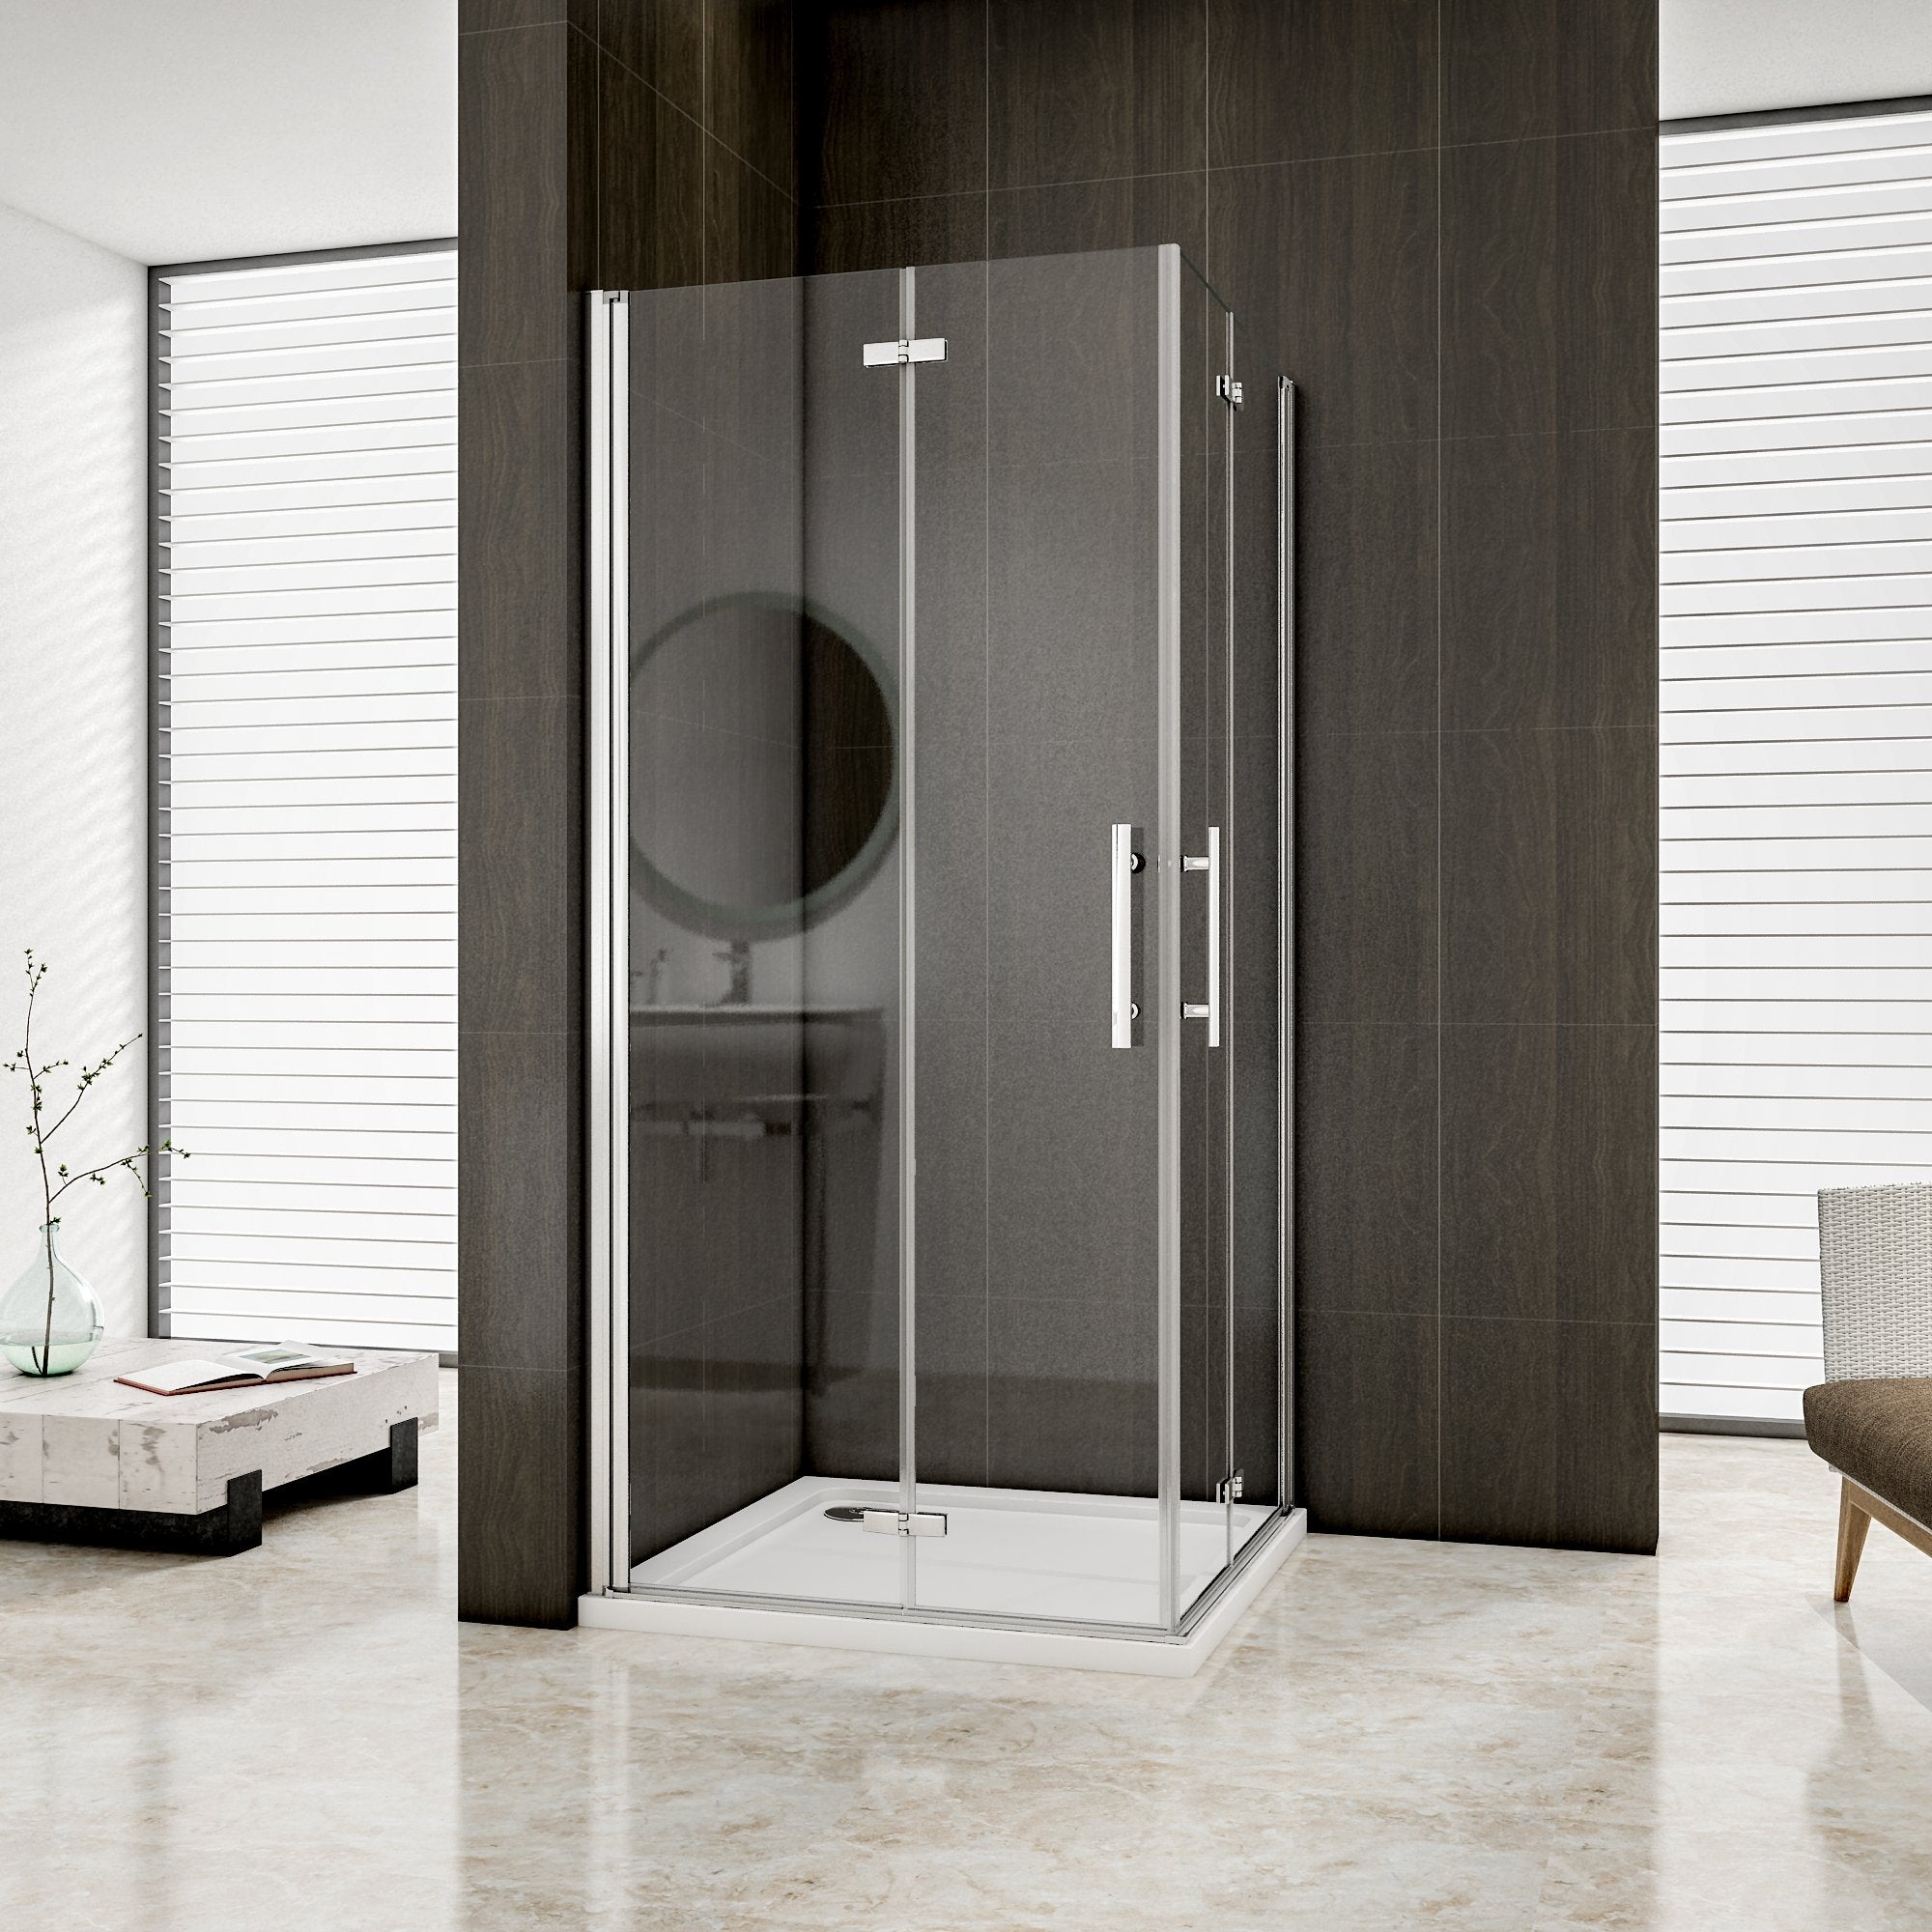 Aica cabine de douche pivotant pliant, verre sécurit clair anticalcaire, réversible, hauteur 195cm , différentes dimensions disponibles -Livraison gratuite